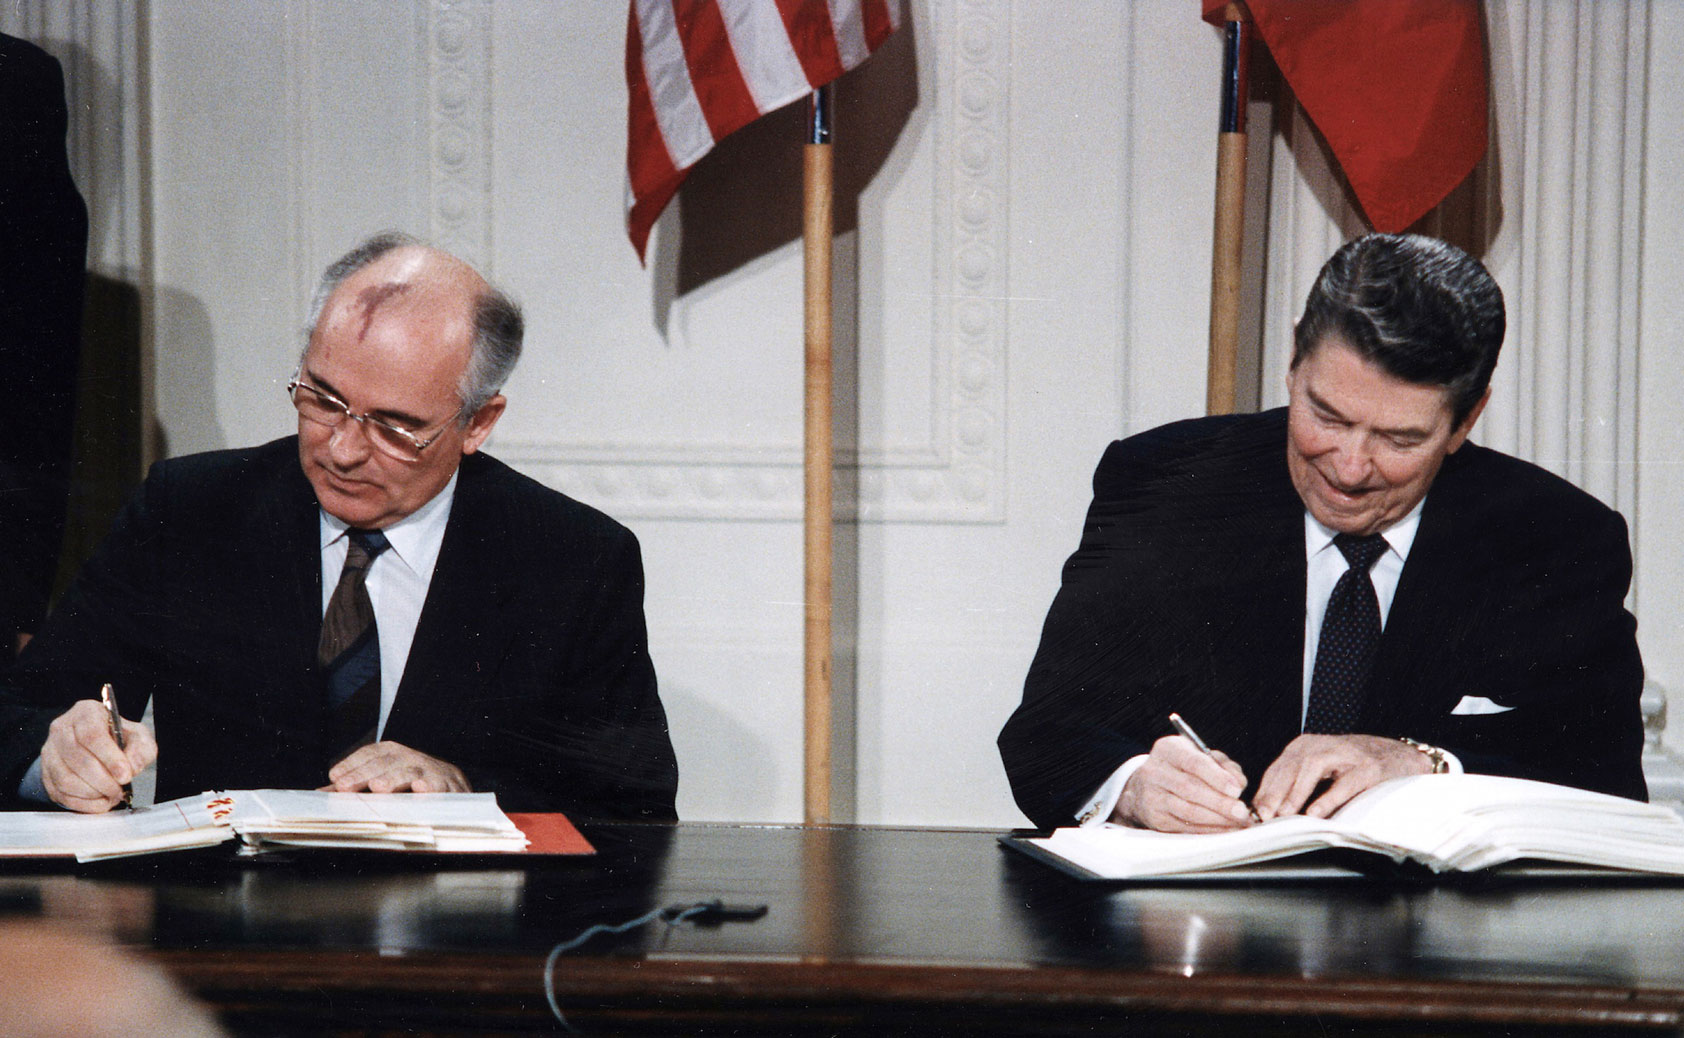 الرئيس الأميركي (الراحل) دونالد ريغن وغوربوتشوف آخر زعيم للاتحاد السوفييتي